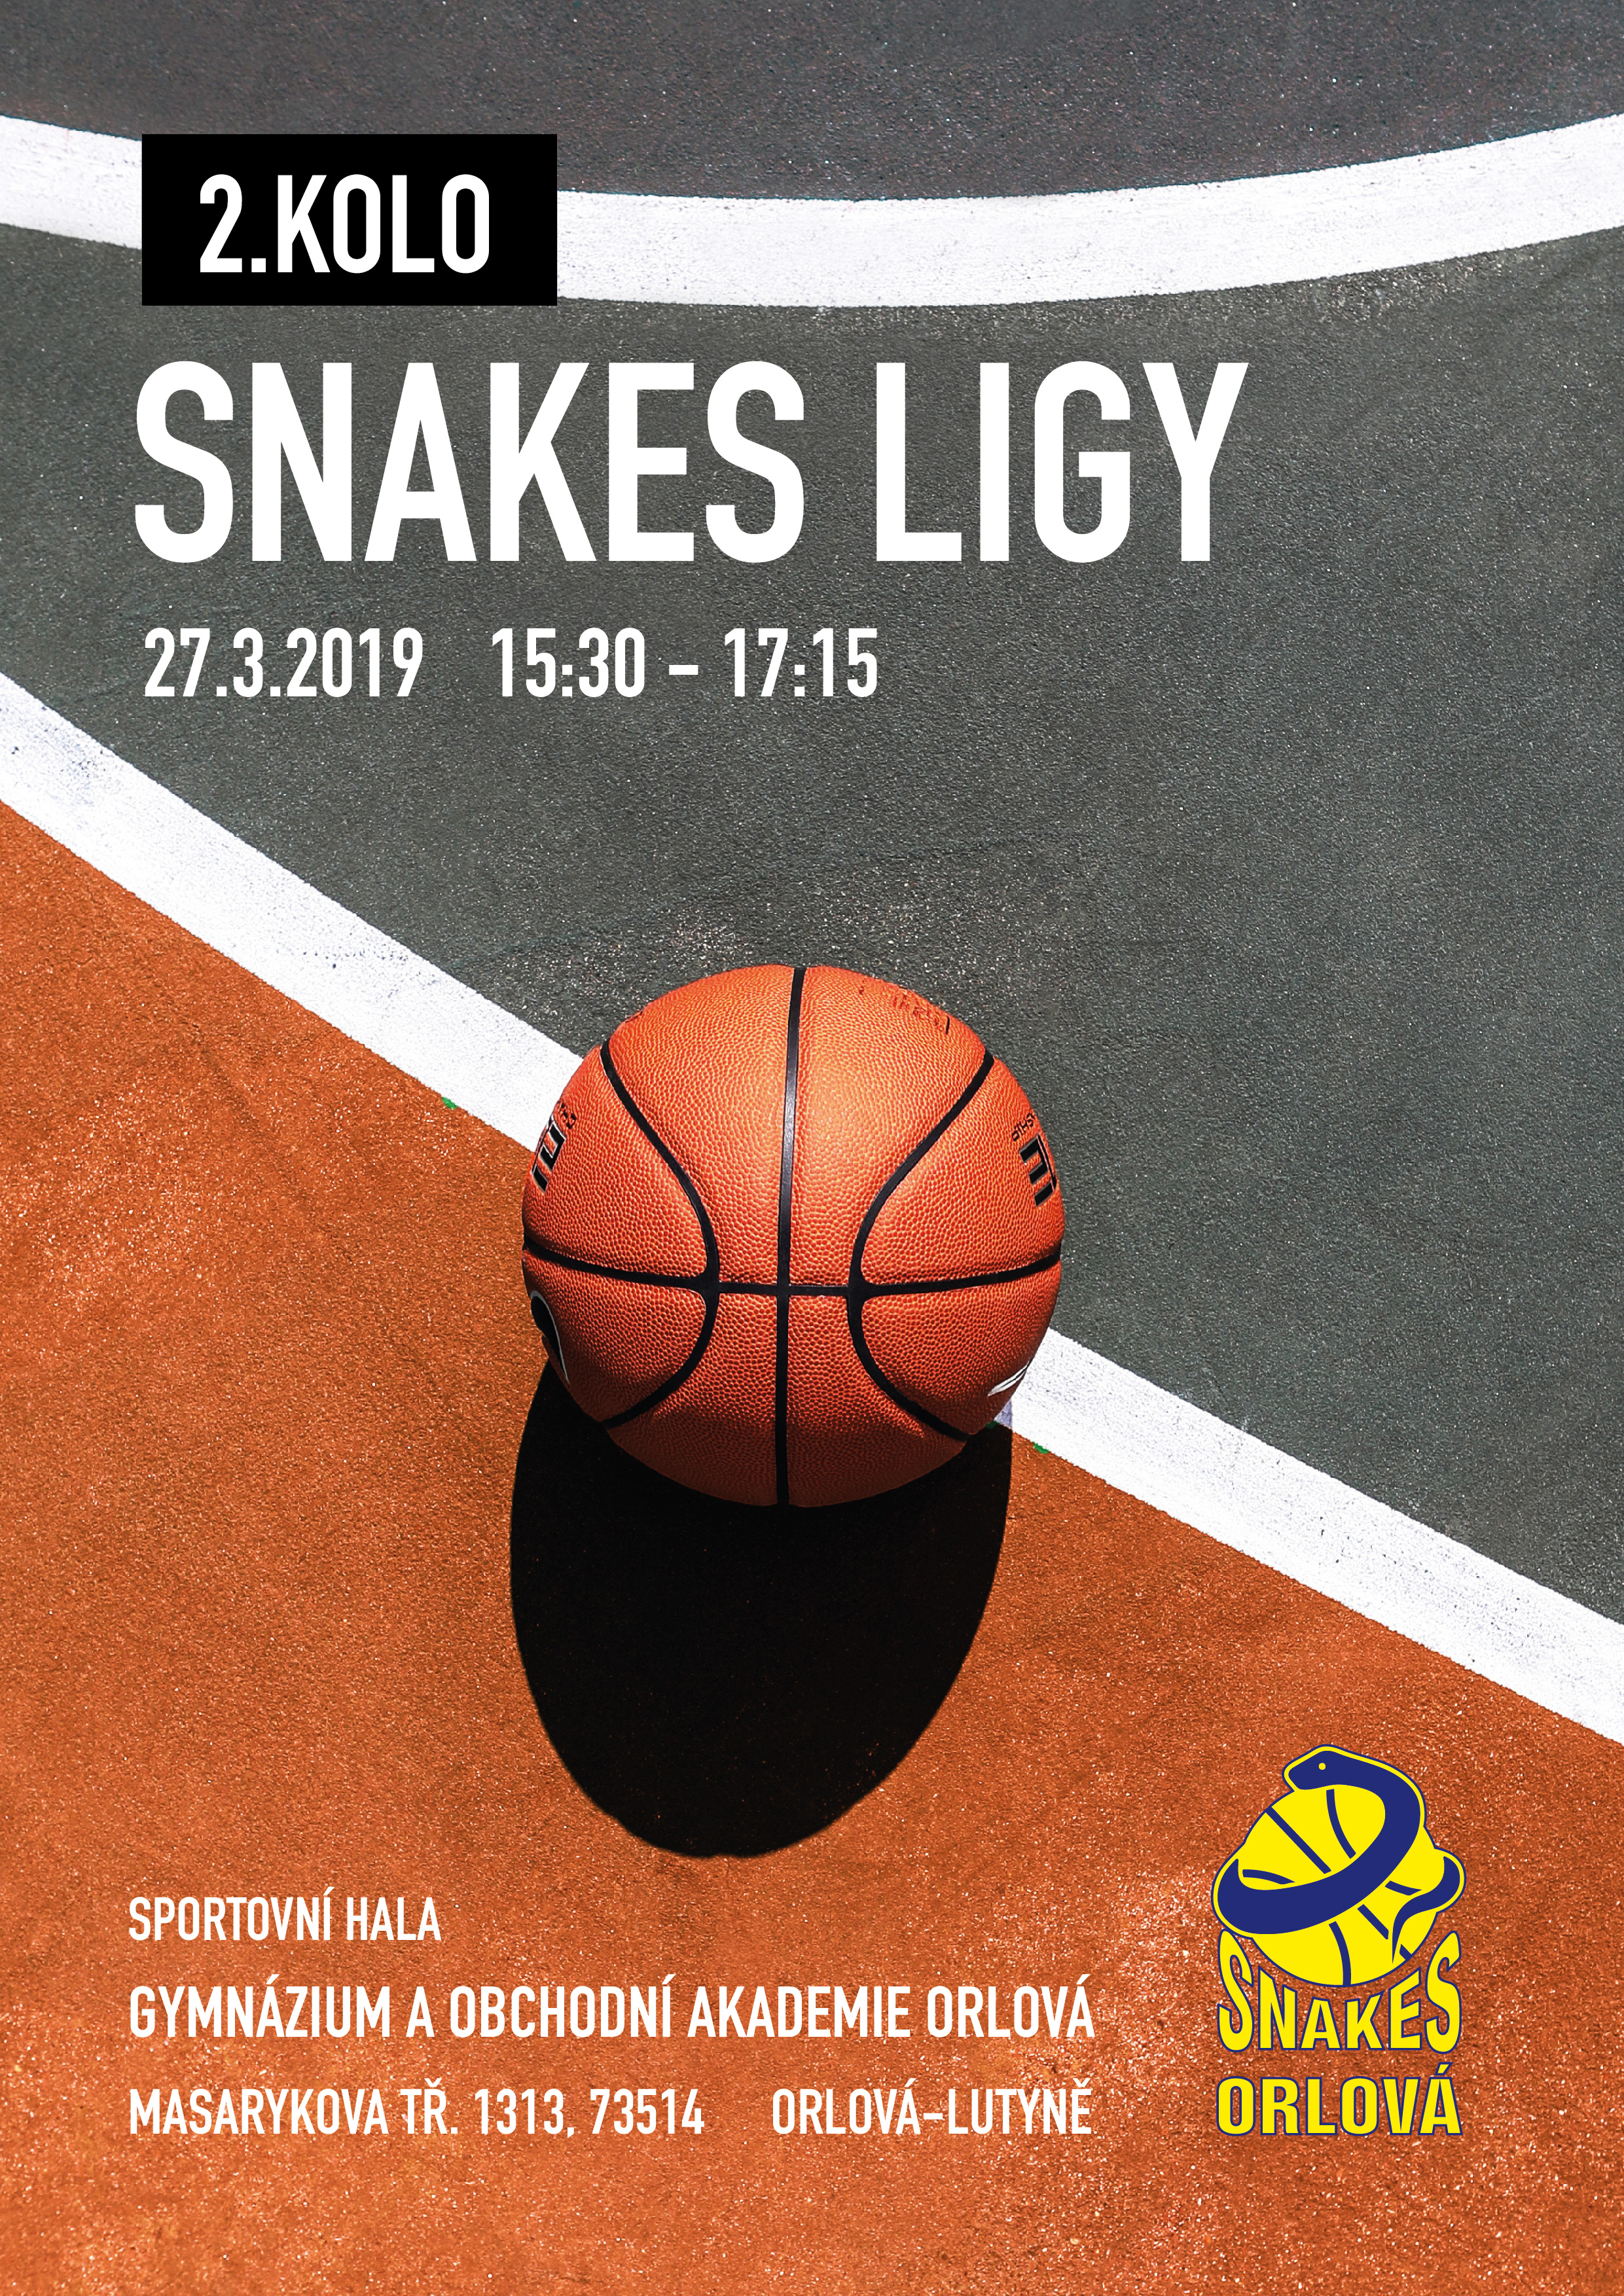 Snakes-liga-orlova-2_kolo